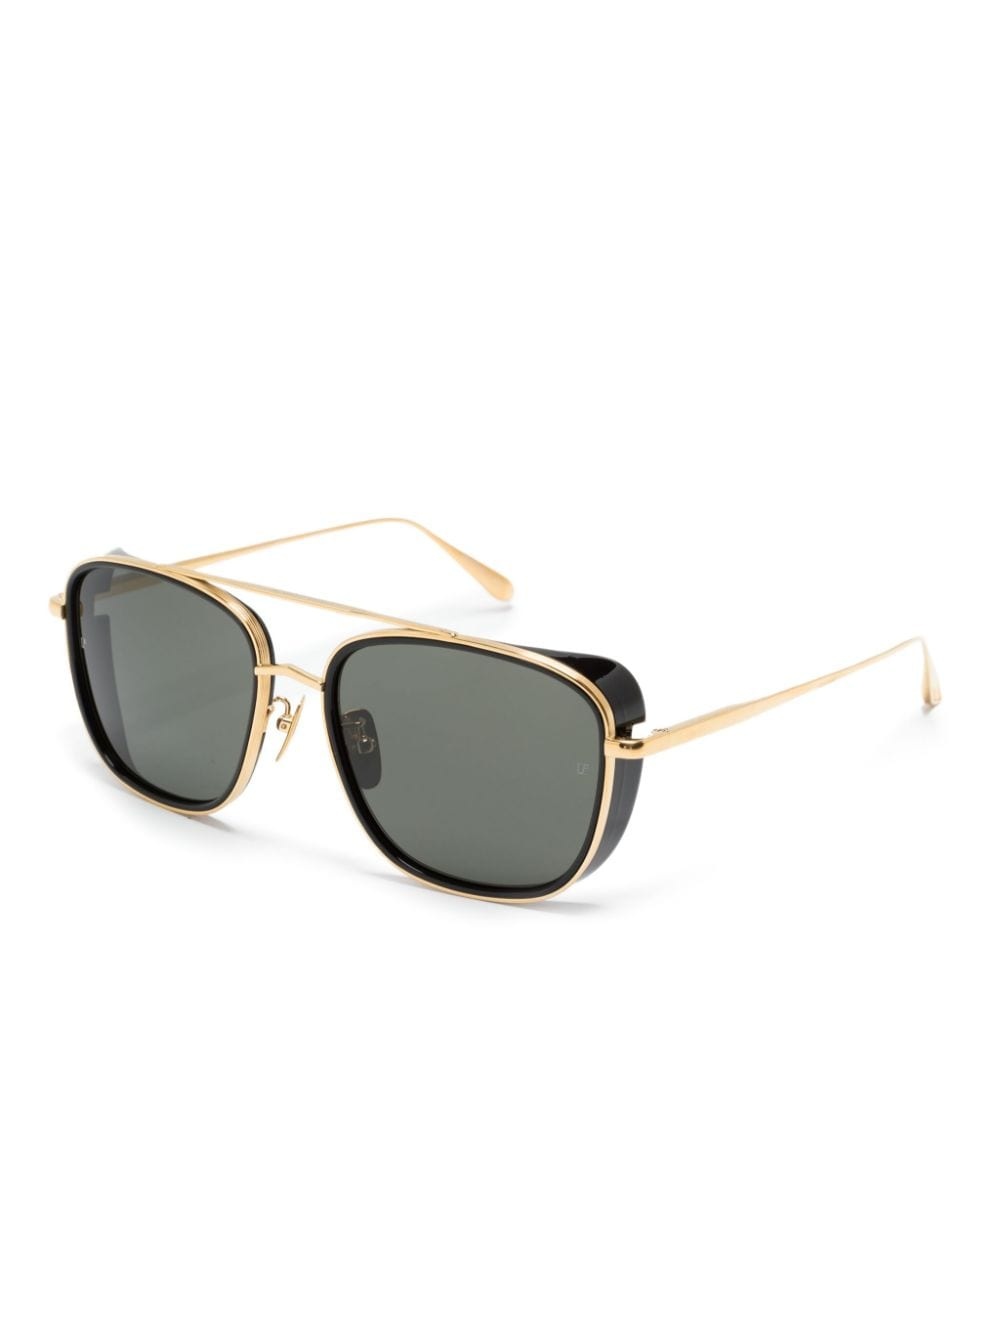 pilot-frame sunglasses - 2